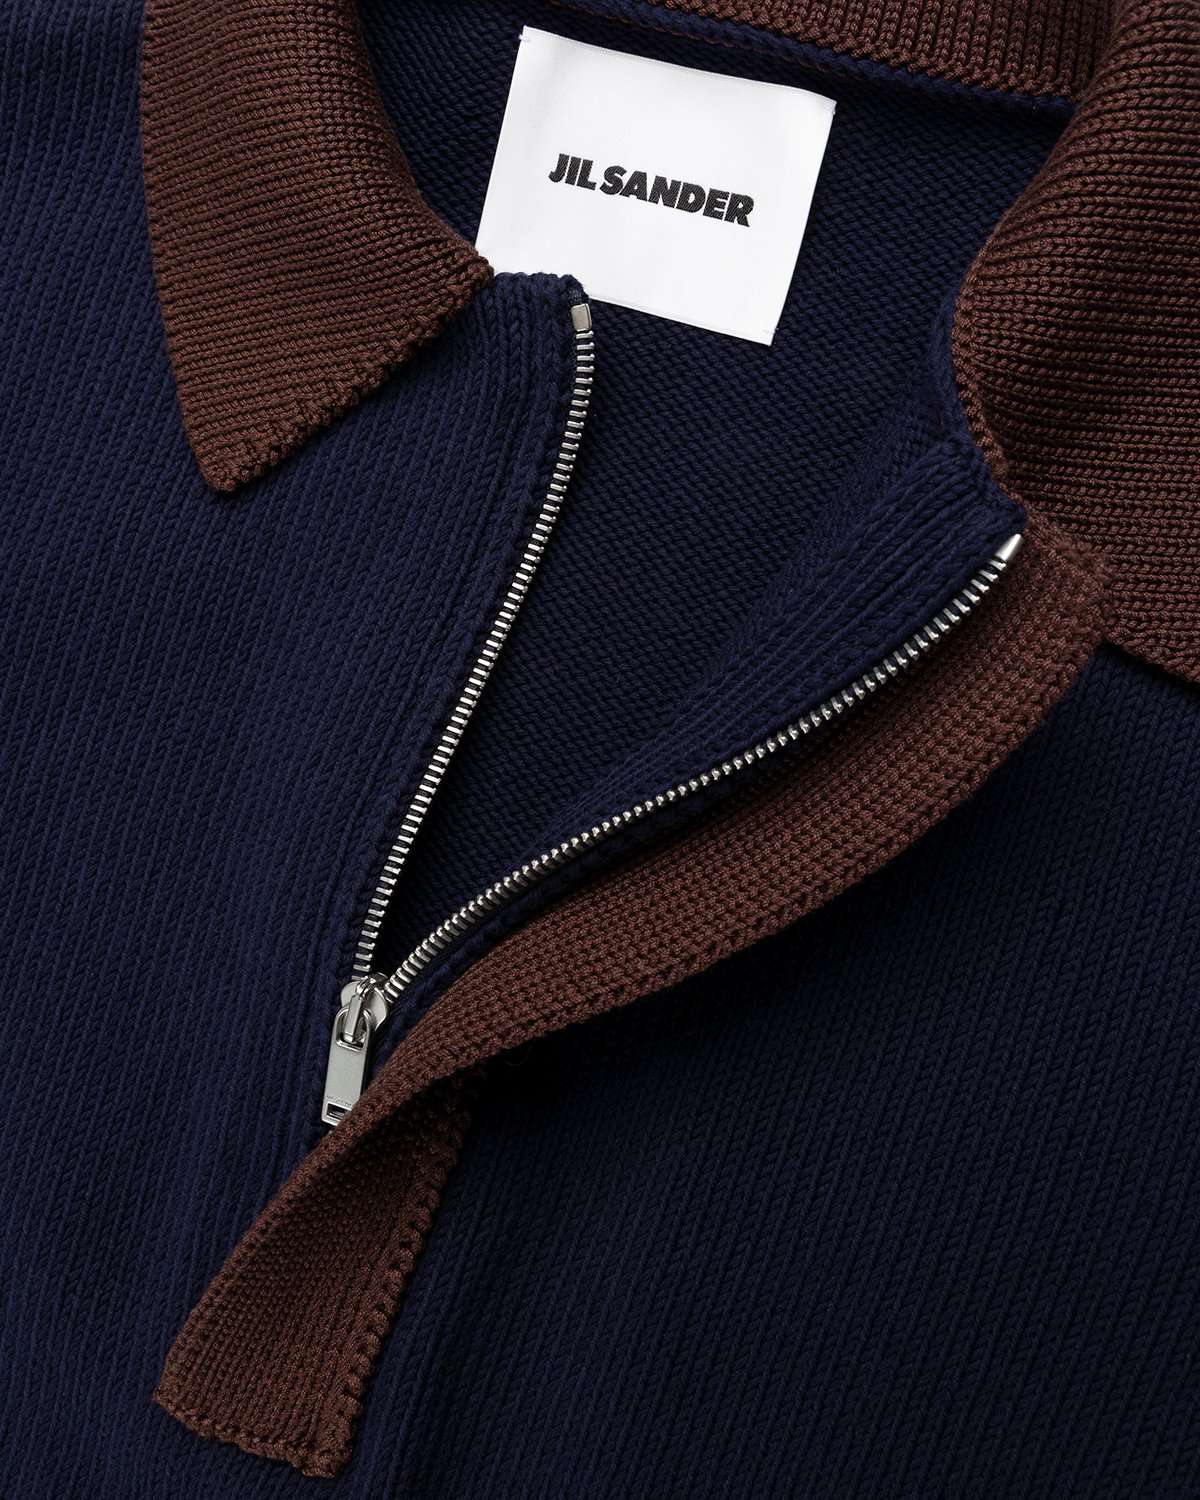 Jil Sander - Short Sleeve Knit Shirt Dark Blue - Clothing - Blue - Image 5